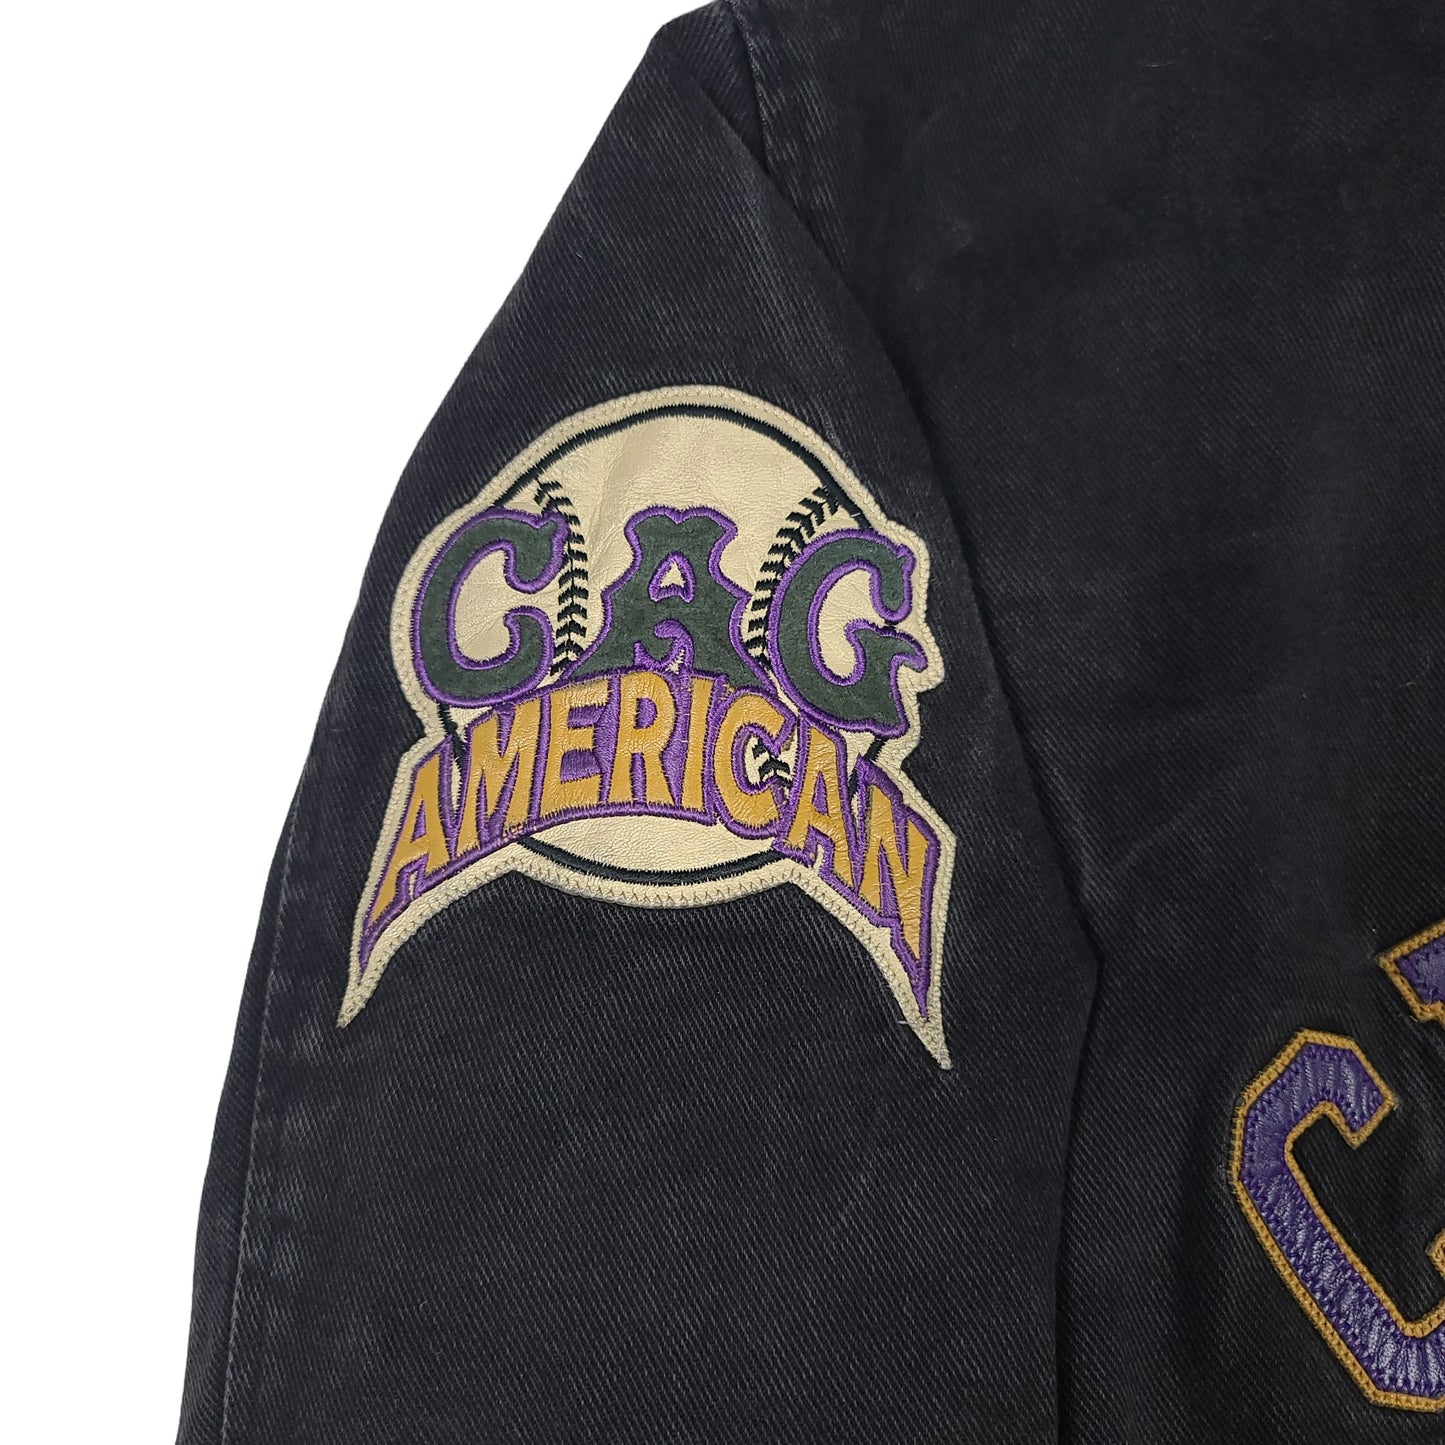 Vintage Chicago American Giants Black Denim Jacket